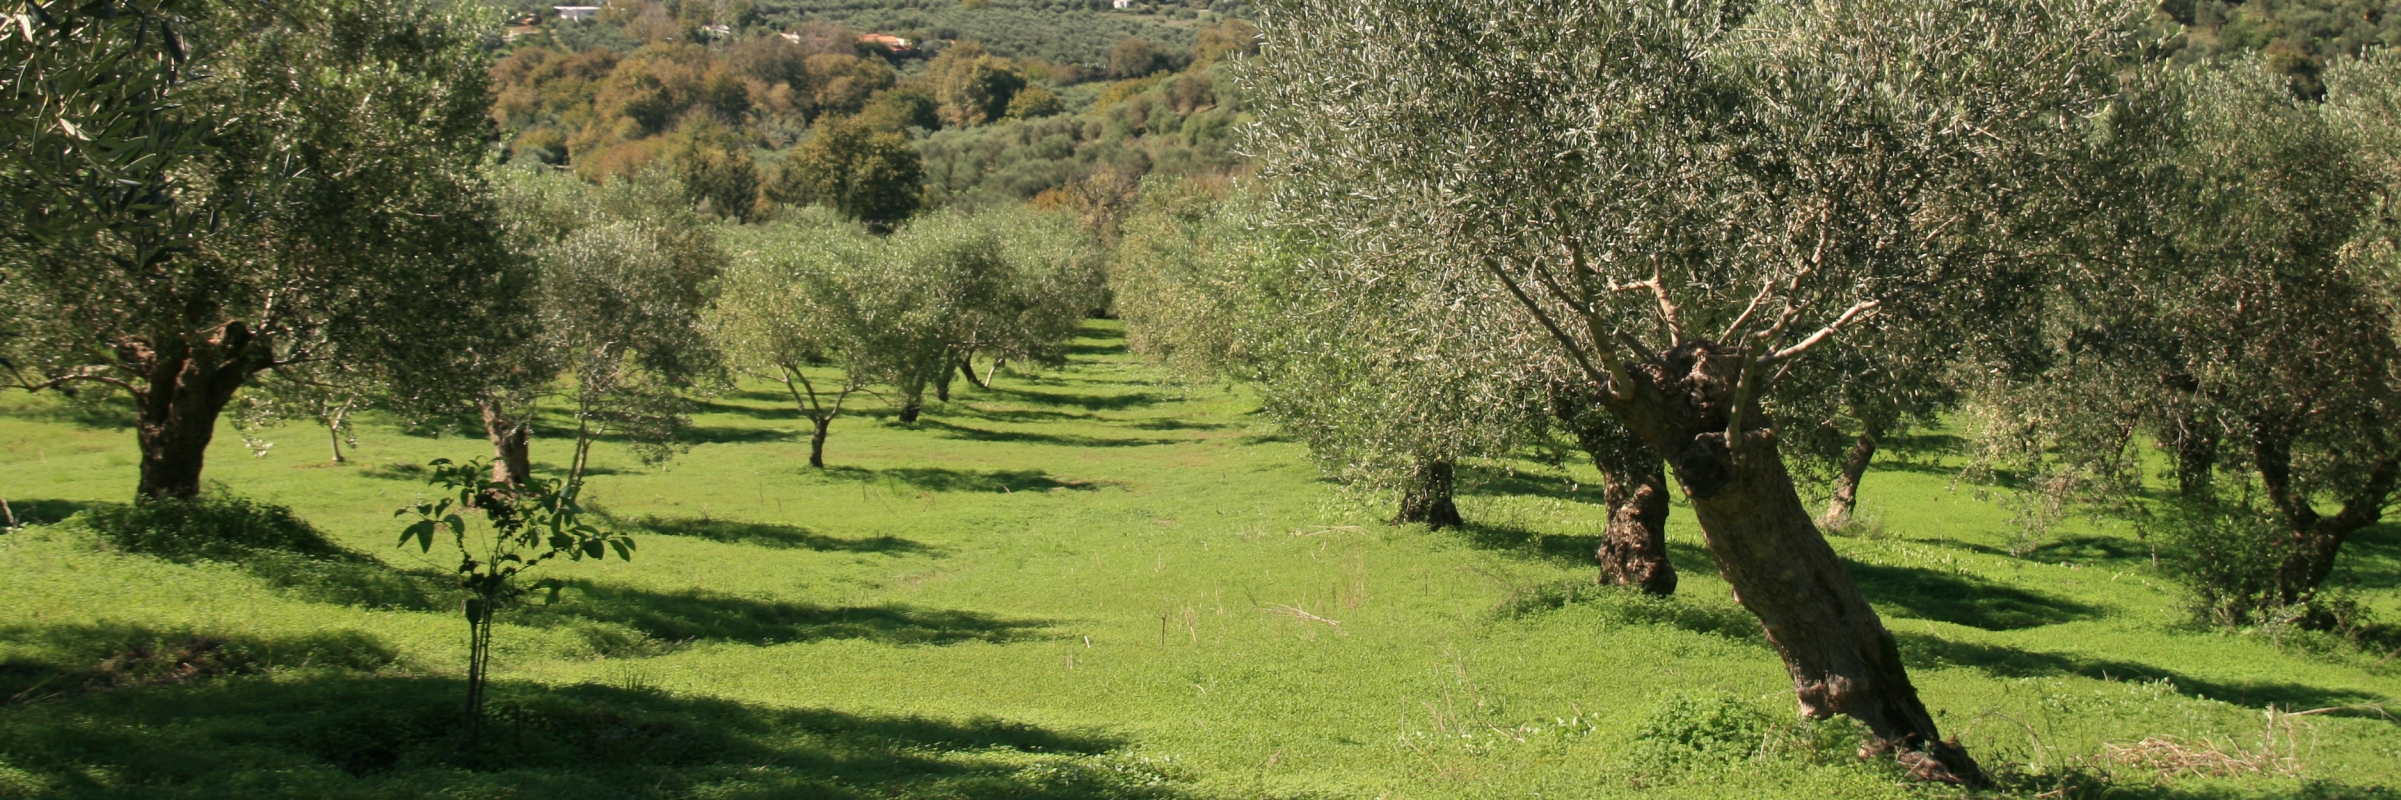 Kreta, Tradition in der Herstellung von reinen Olivenölseifen